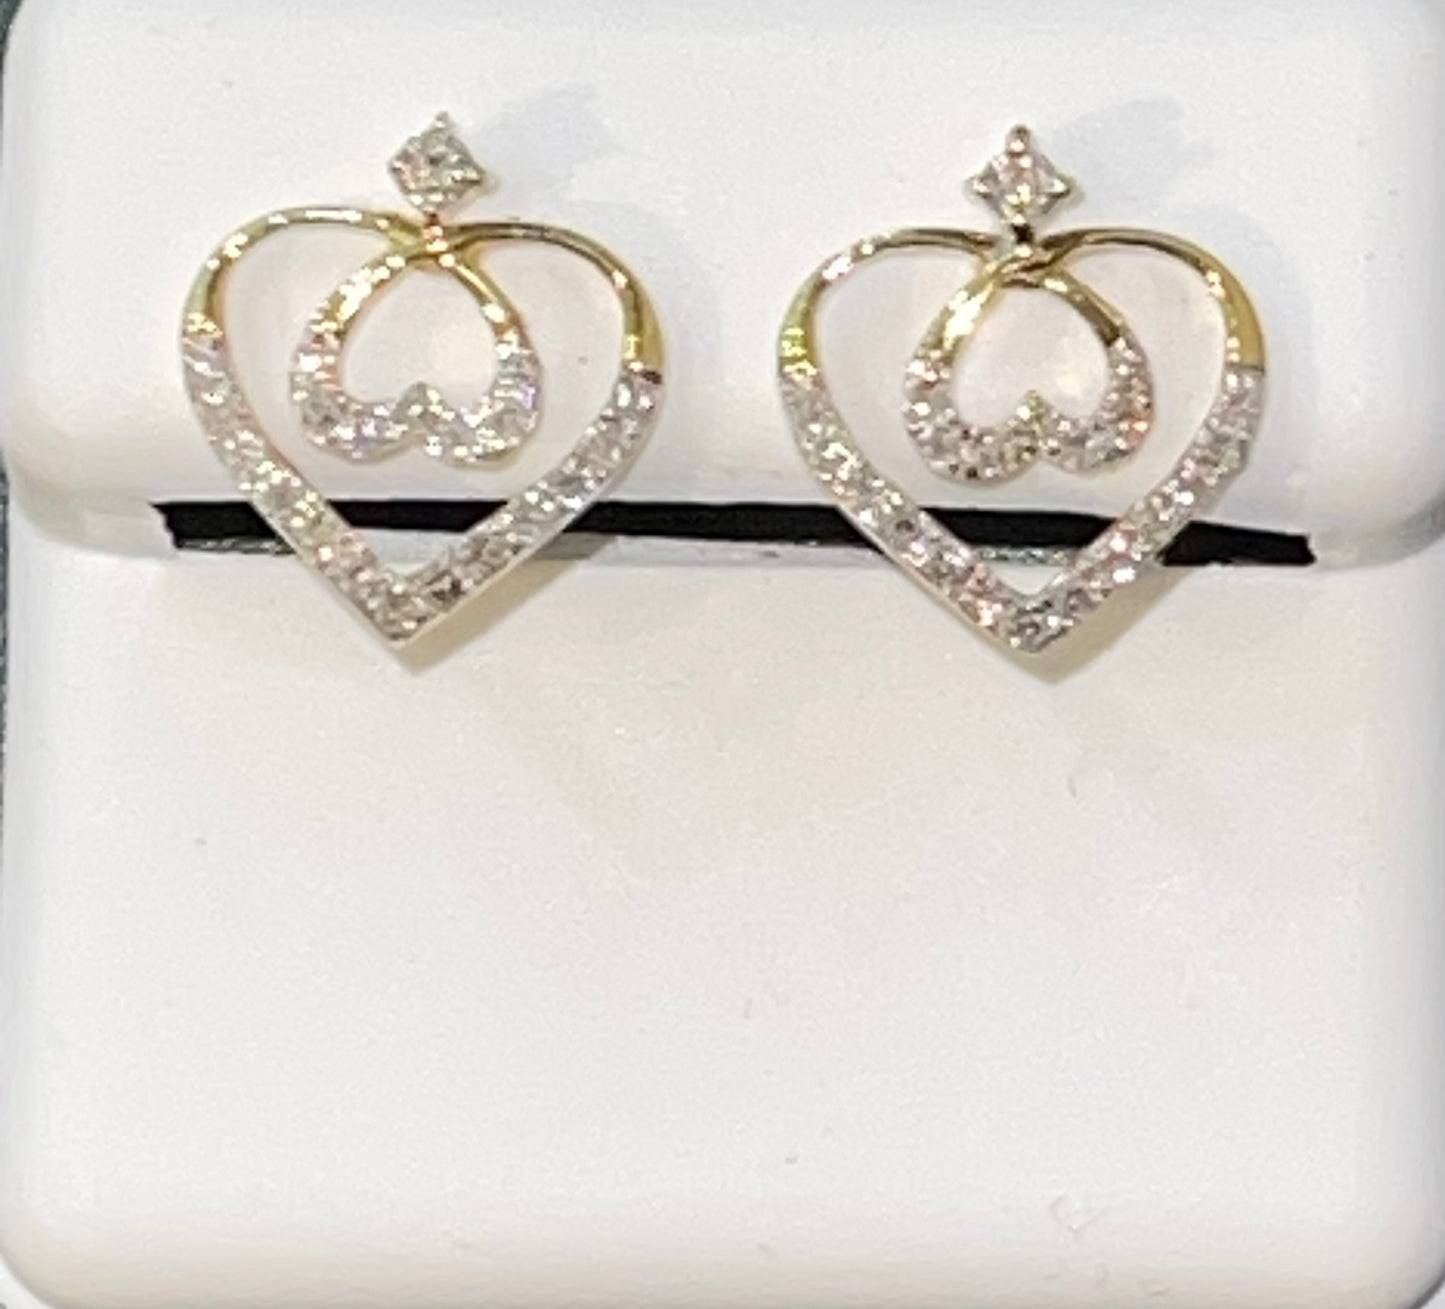 10K Yellow Gold Diamond Heart Earrings